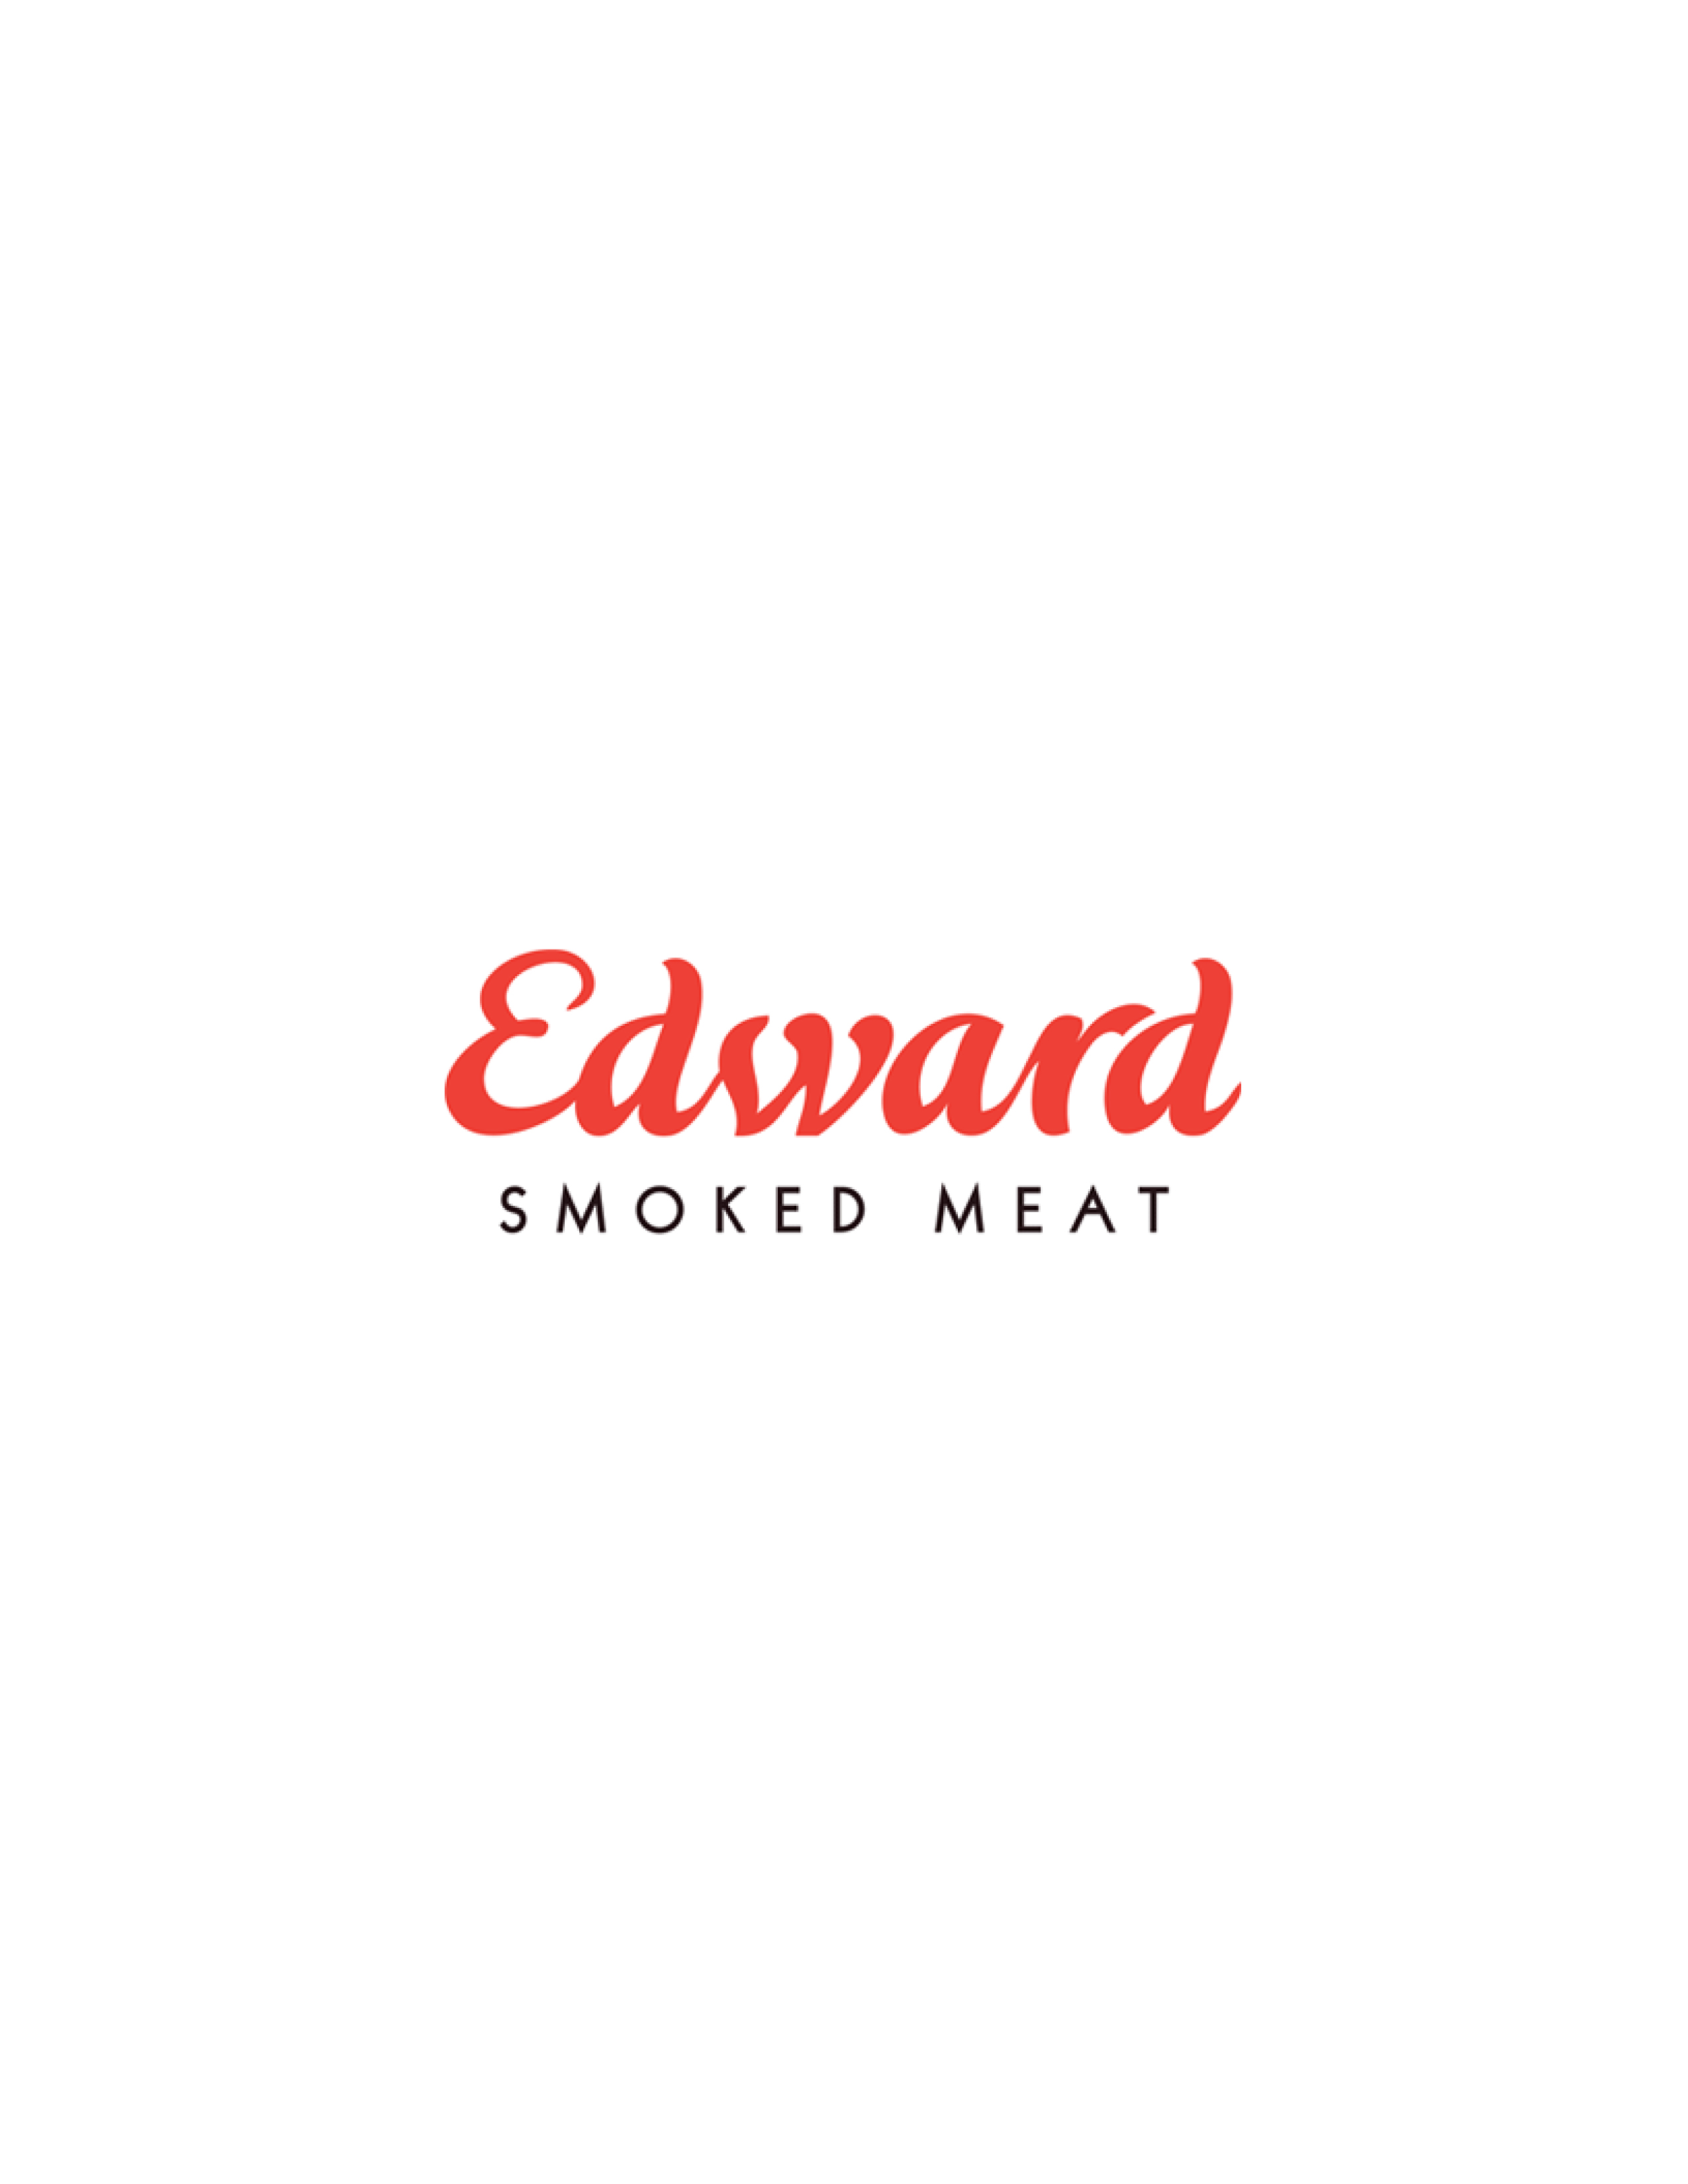 Edward smoked meat